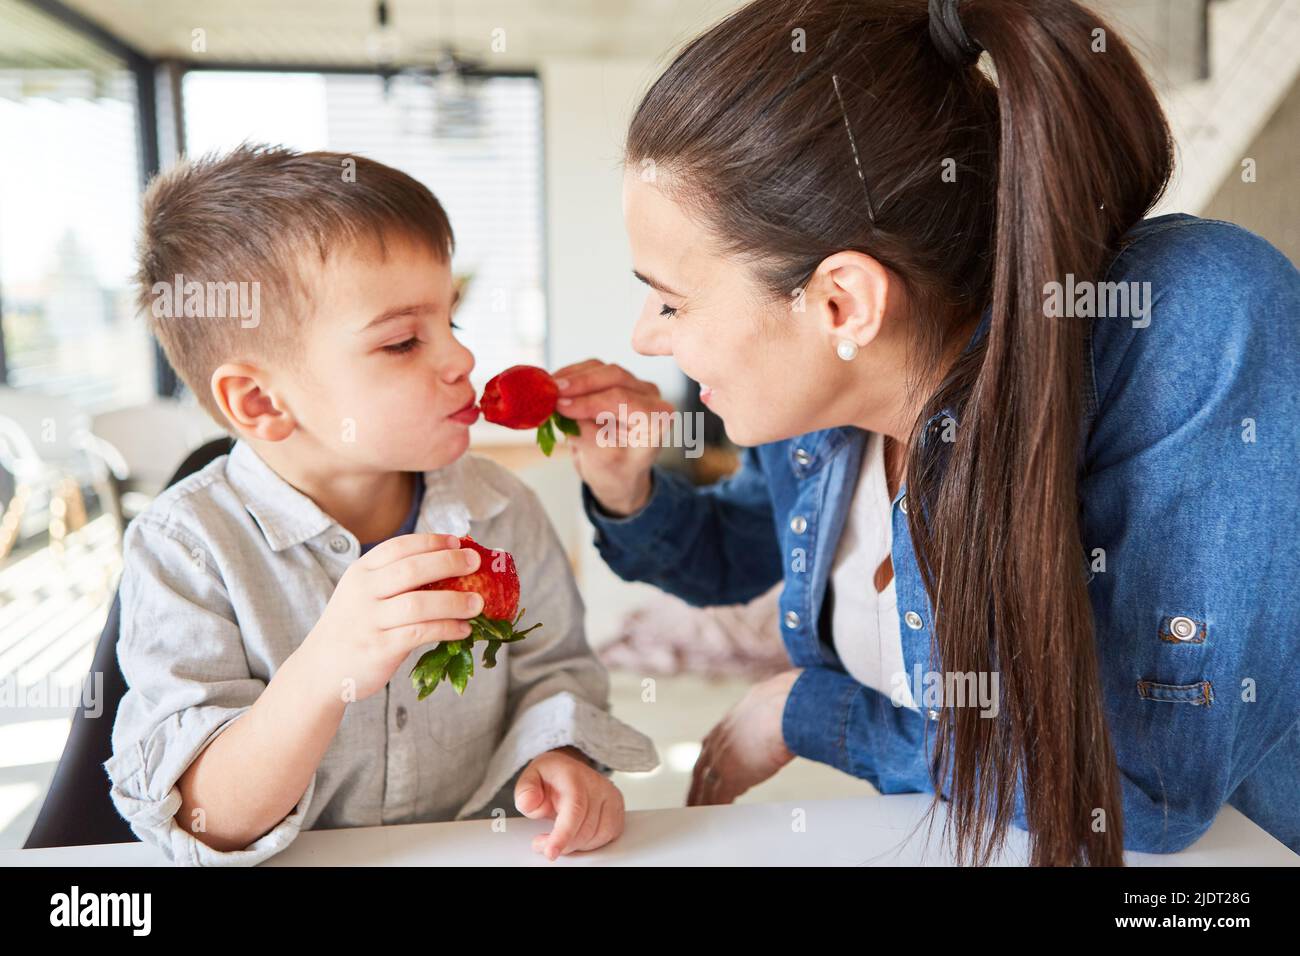 Maman nourrit son fils d'une fraise fraîche pour des vitamines et une alimentation saine Banque D'Images